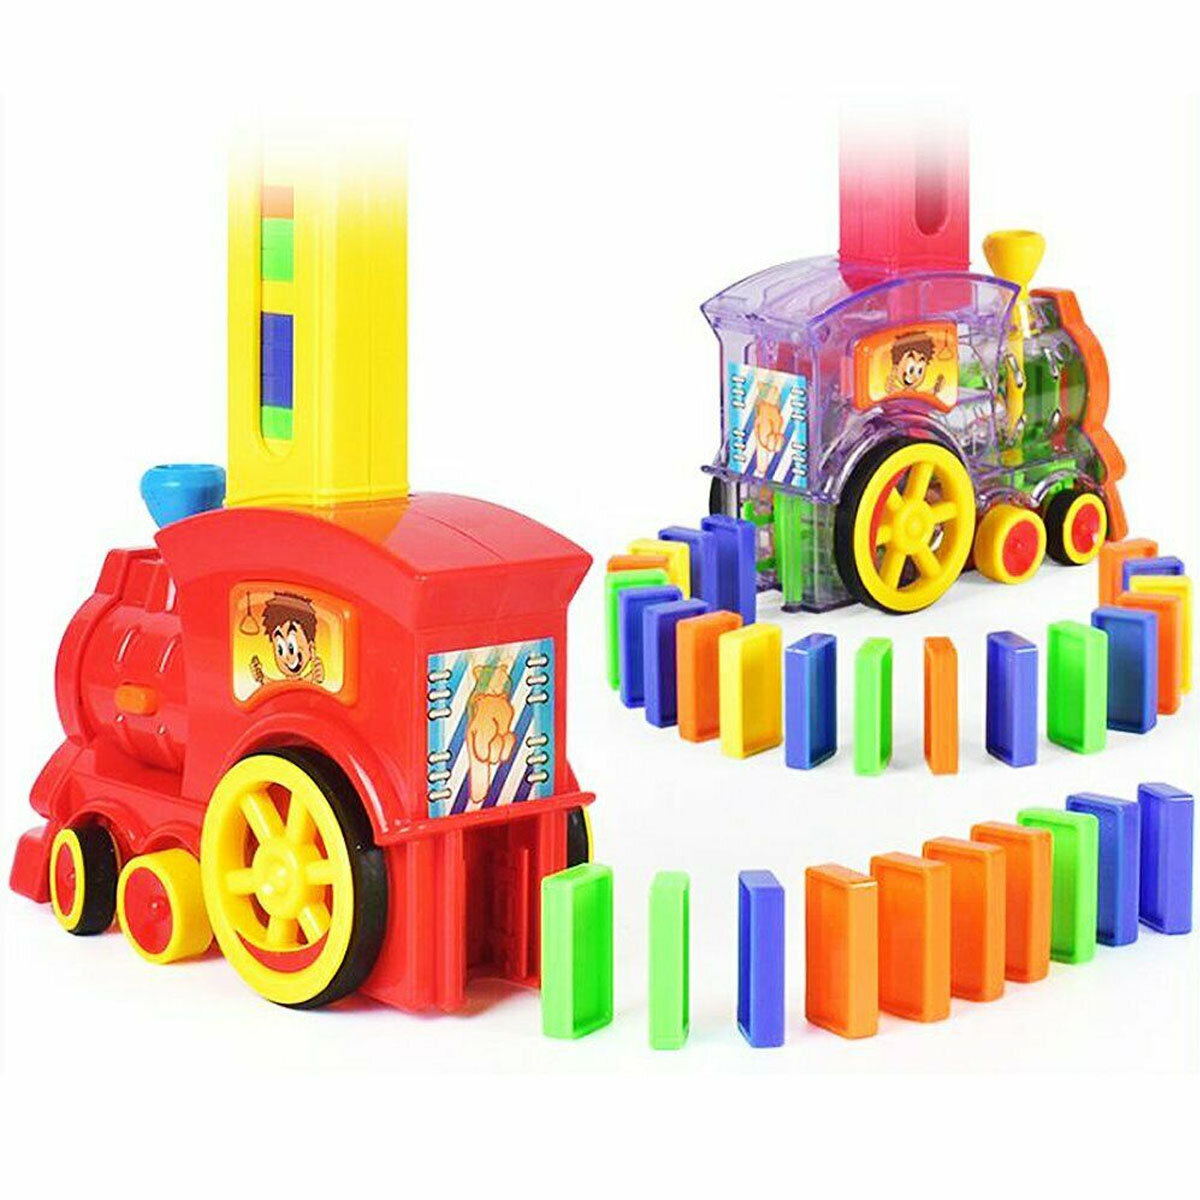 60 قطعة طقم سيارة قطار دومينو بمحرك مجموعة كتل مصعد جسر Springboard مجموعة Colorful طوب لعبة بلاستيكية هدية للأطفال الصغ